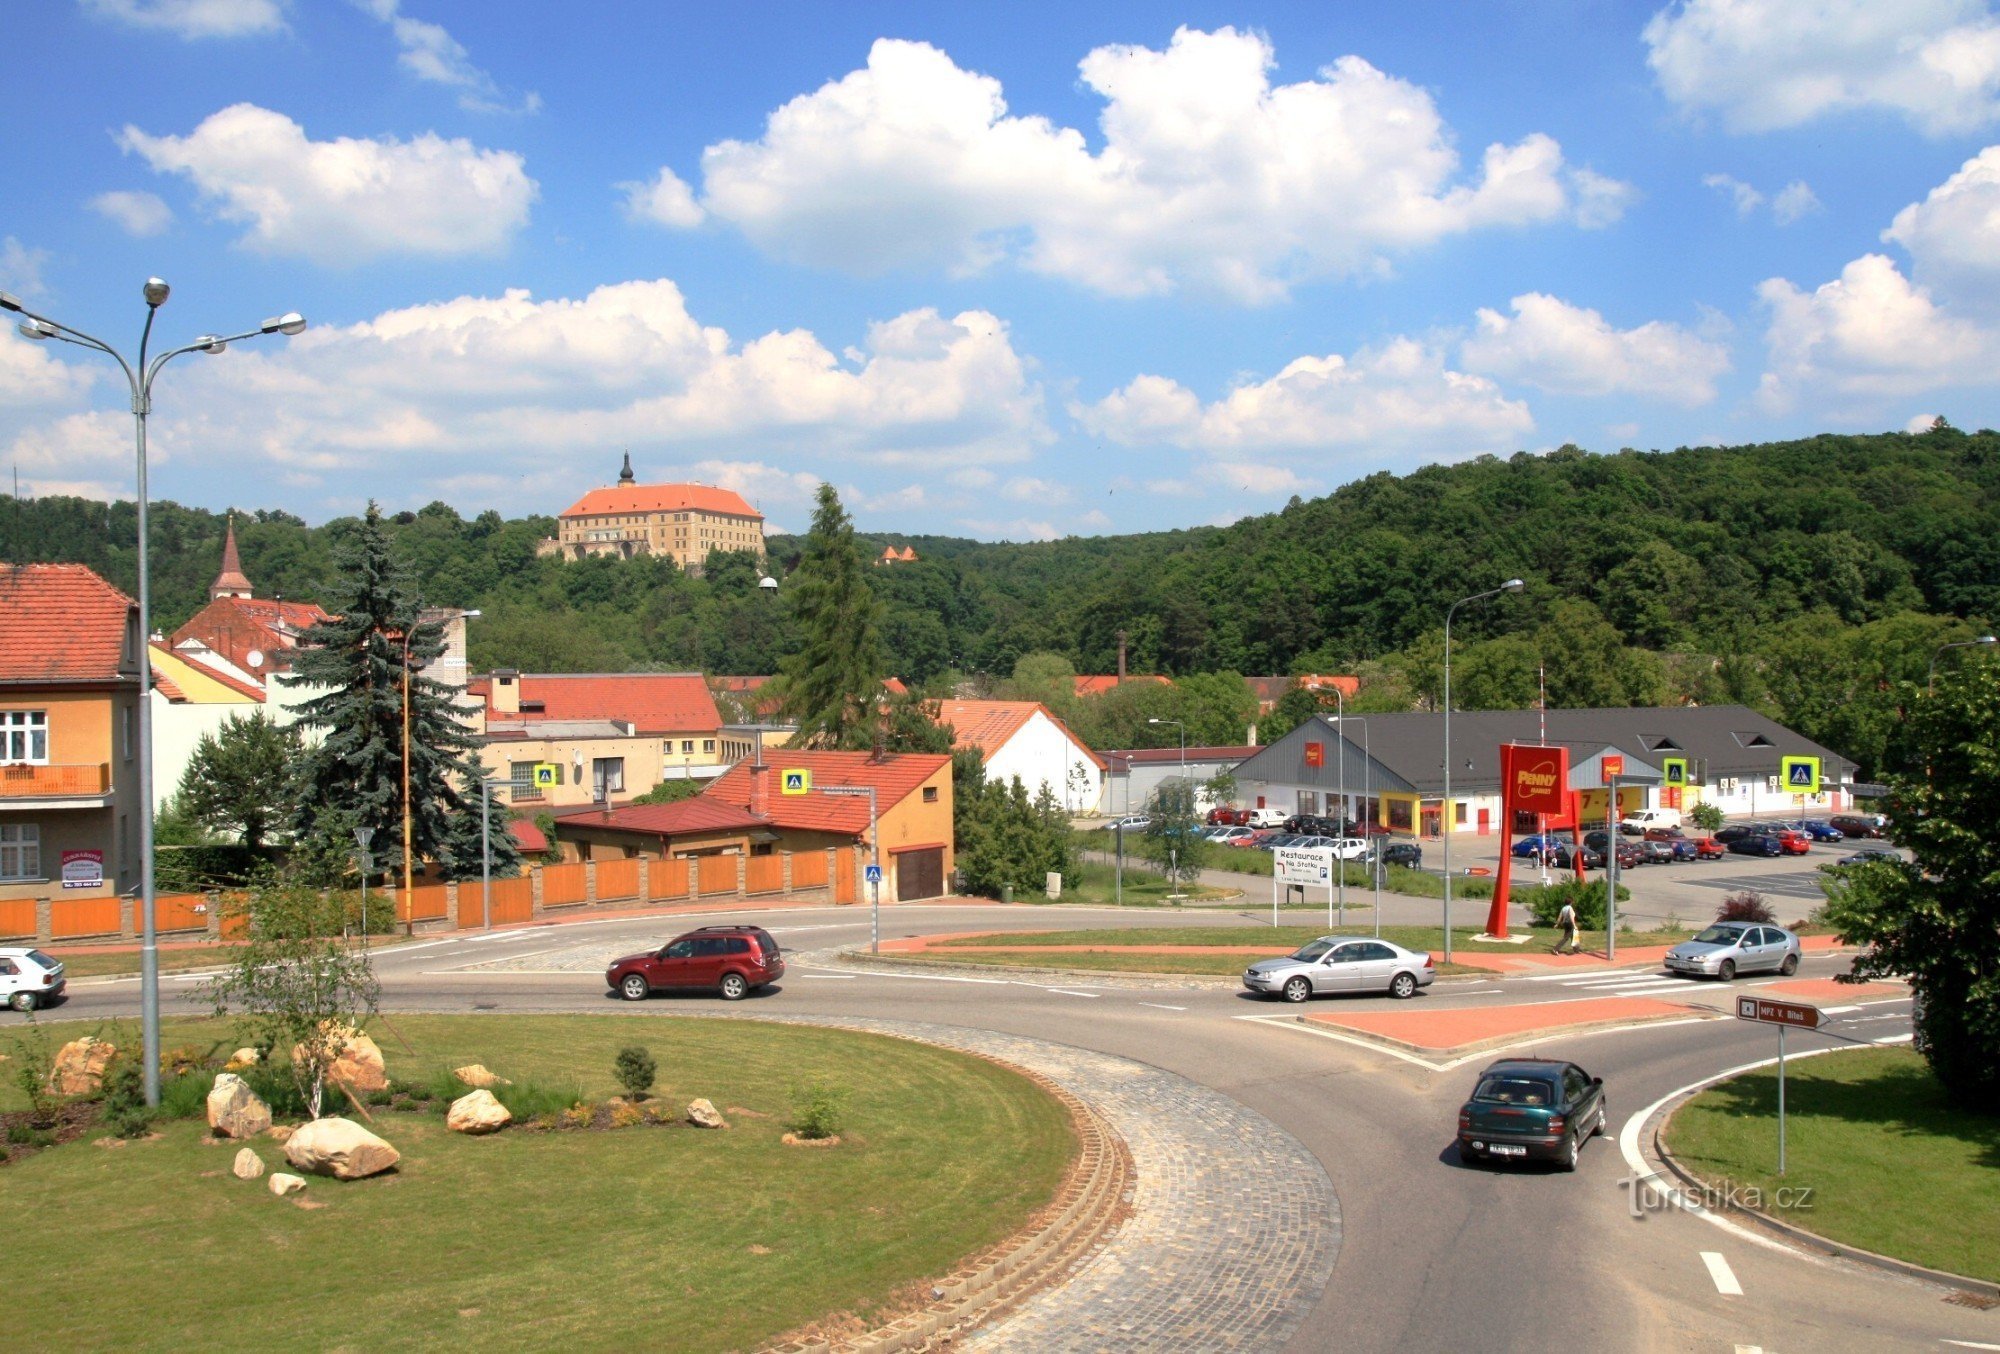 Náměšť nad Oslavou - road stretch through the city